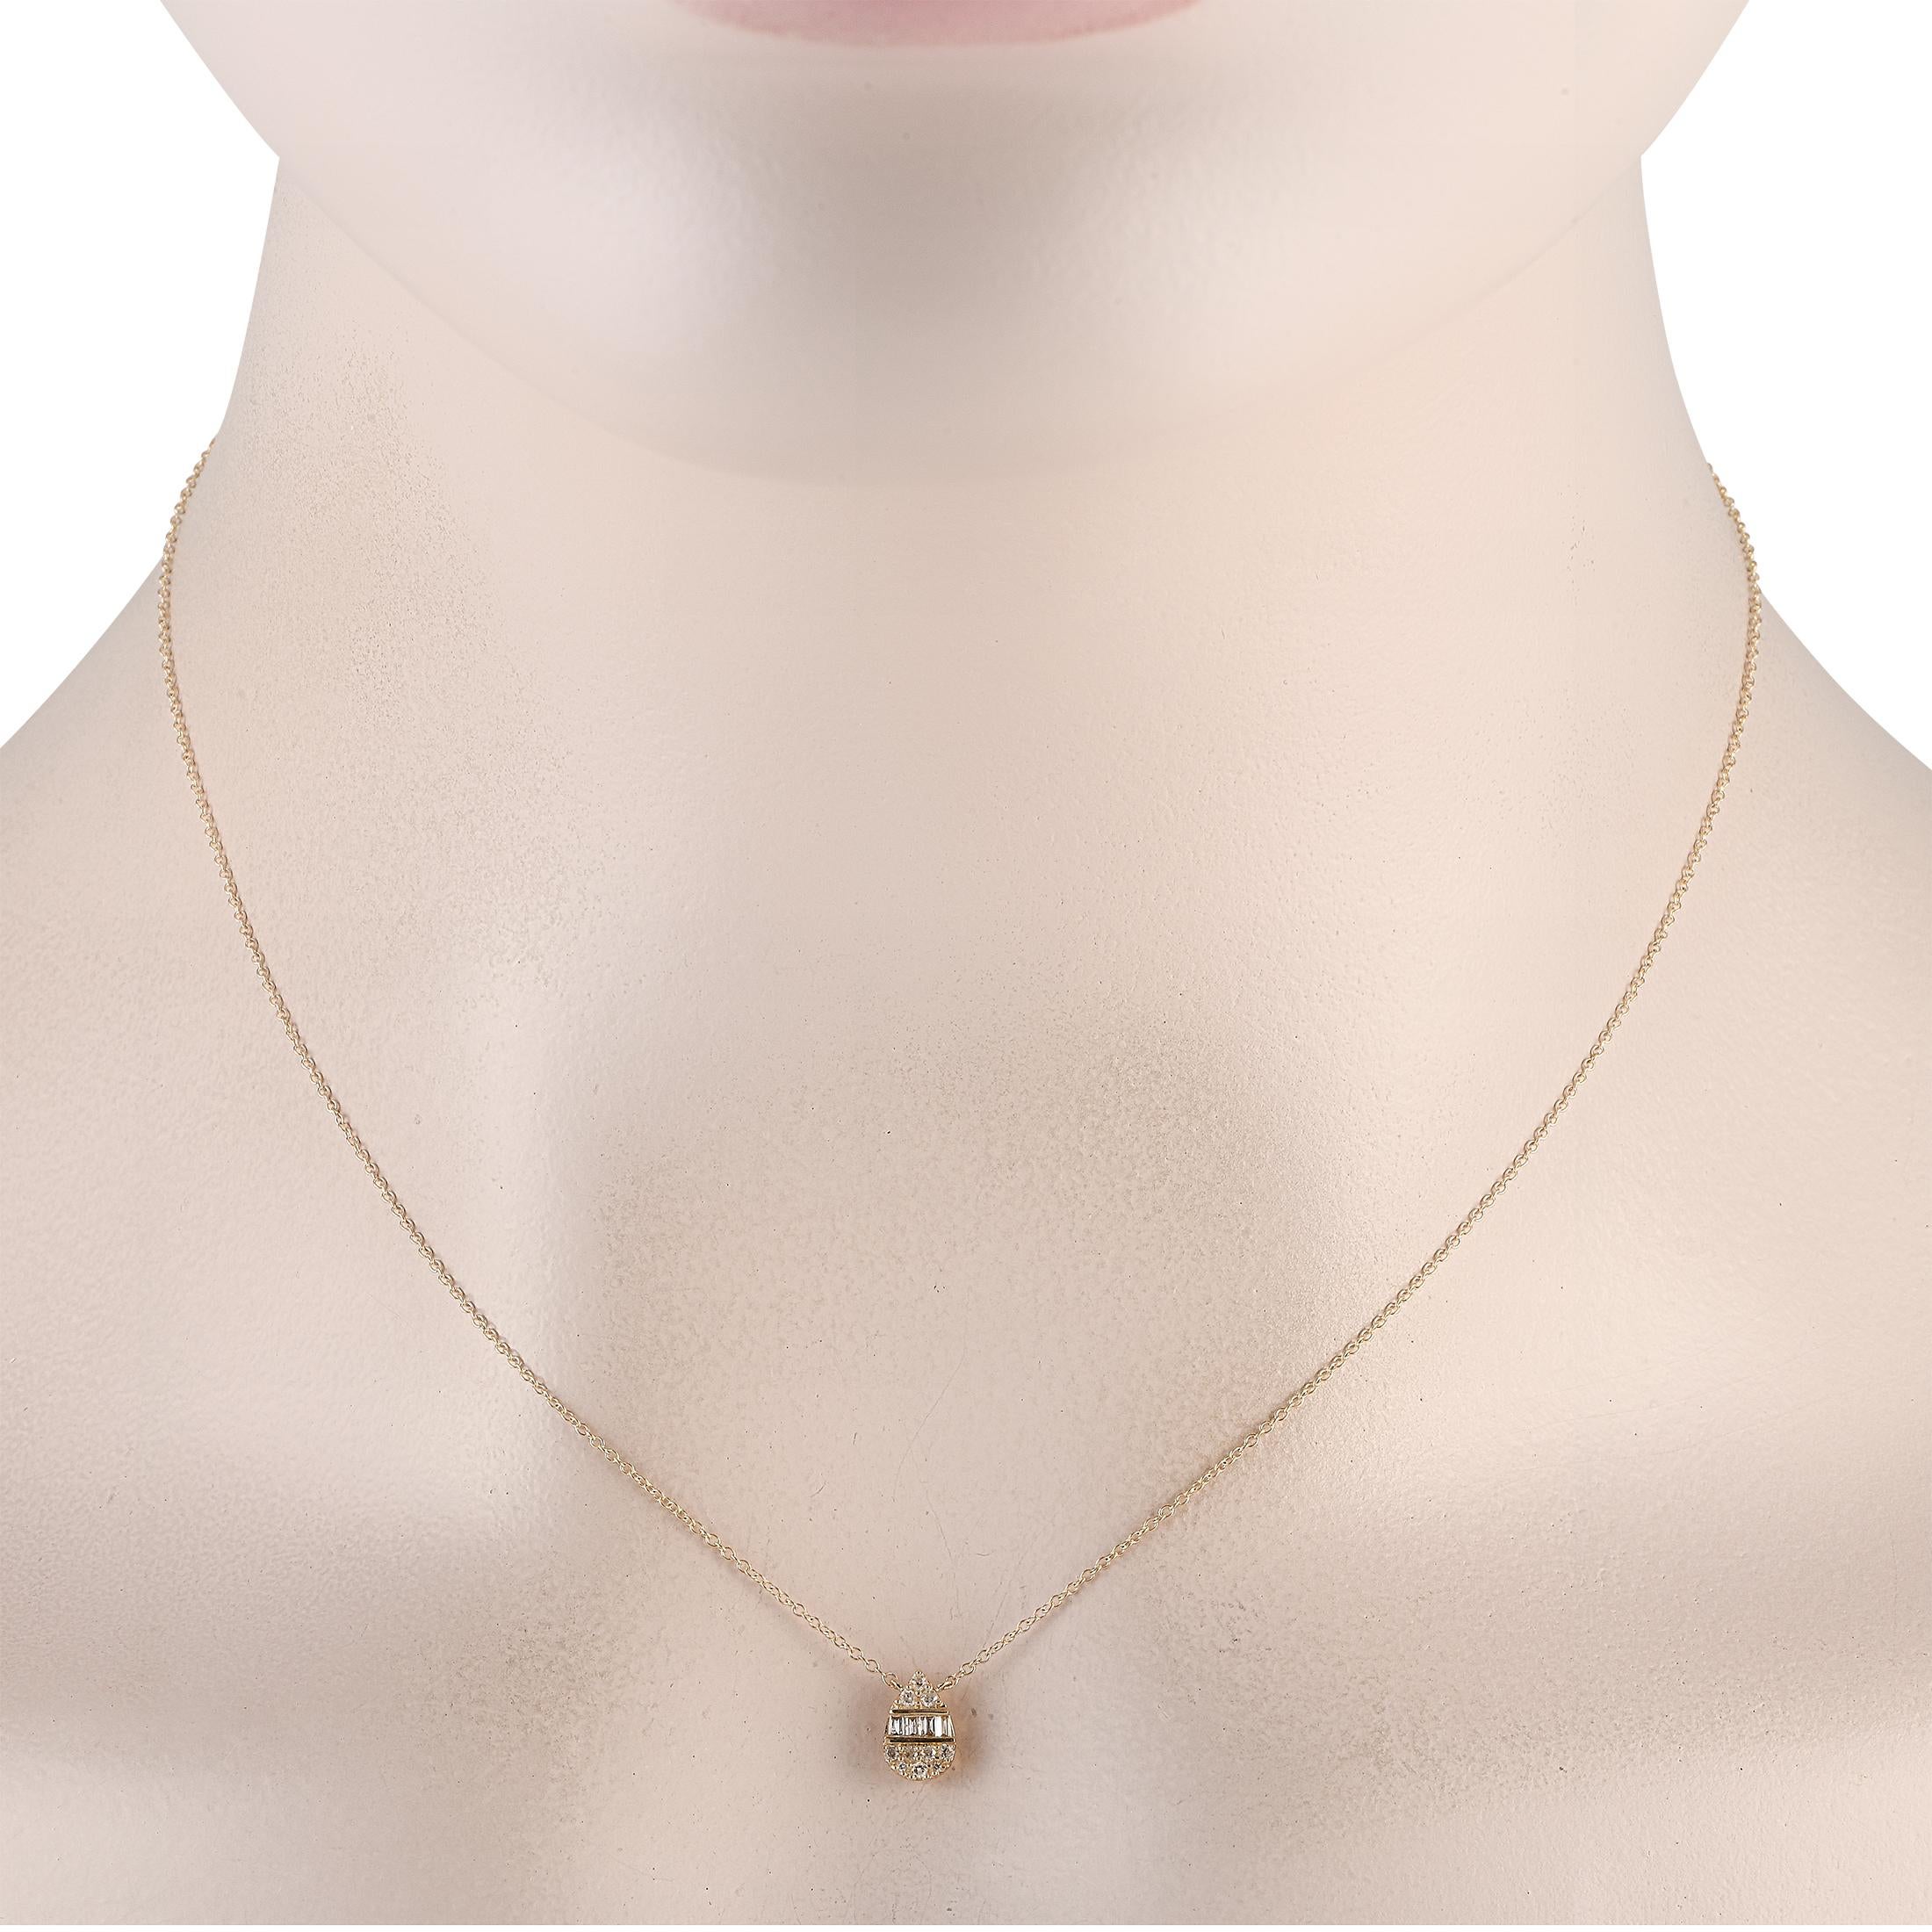 Ce collier en or jaune 14 carats est idéal pour les personnes à l'esthétique minimaliste. Suspendu à une chaîne de 16, un pendentif en forme de poire mesurant 0,65 de long par 0,15 de large brille de mille feux grâce à des diamants ronds et